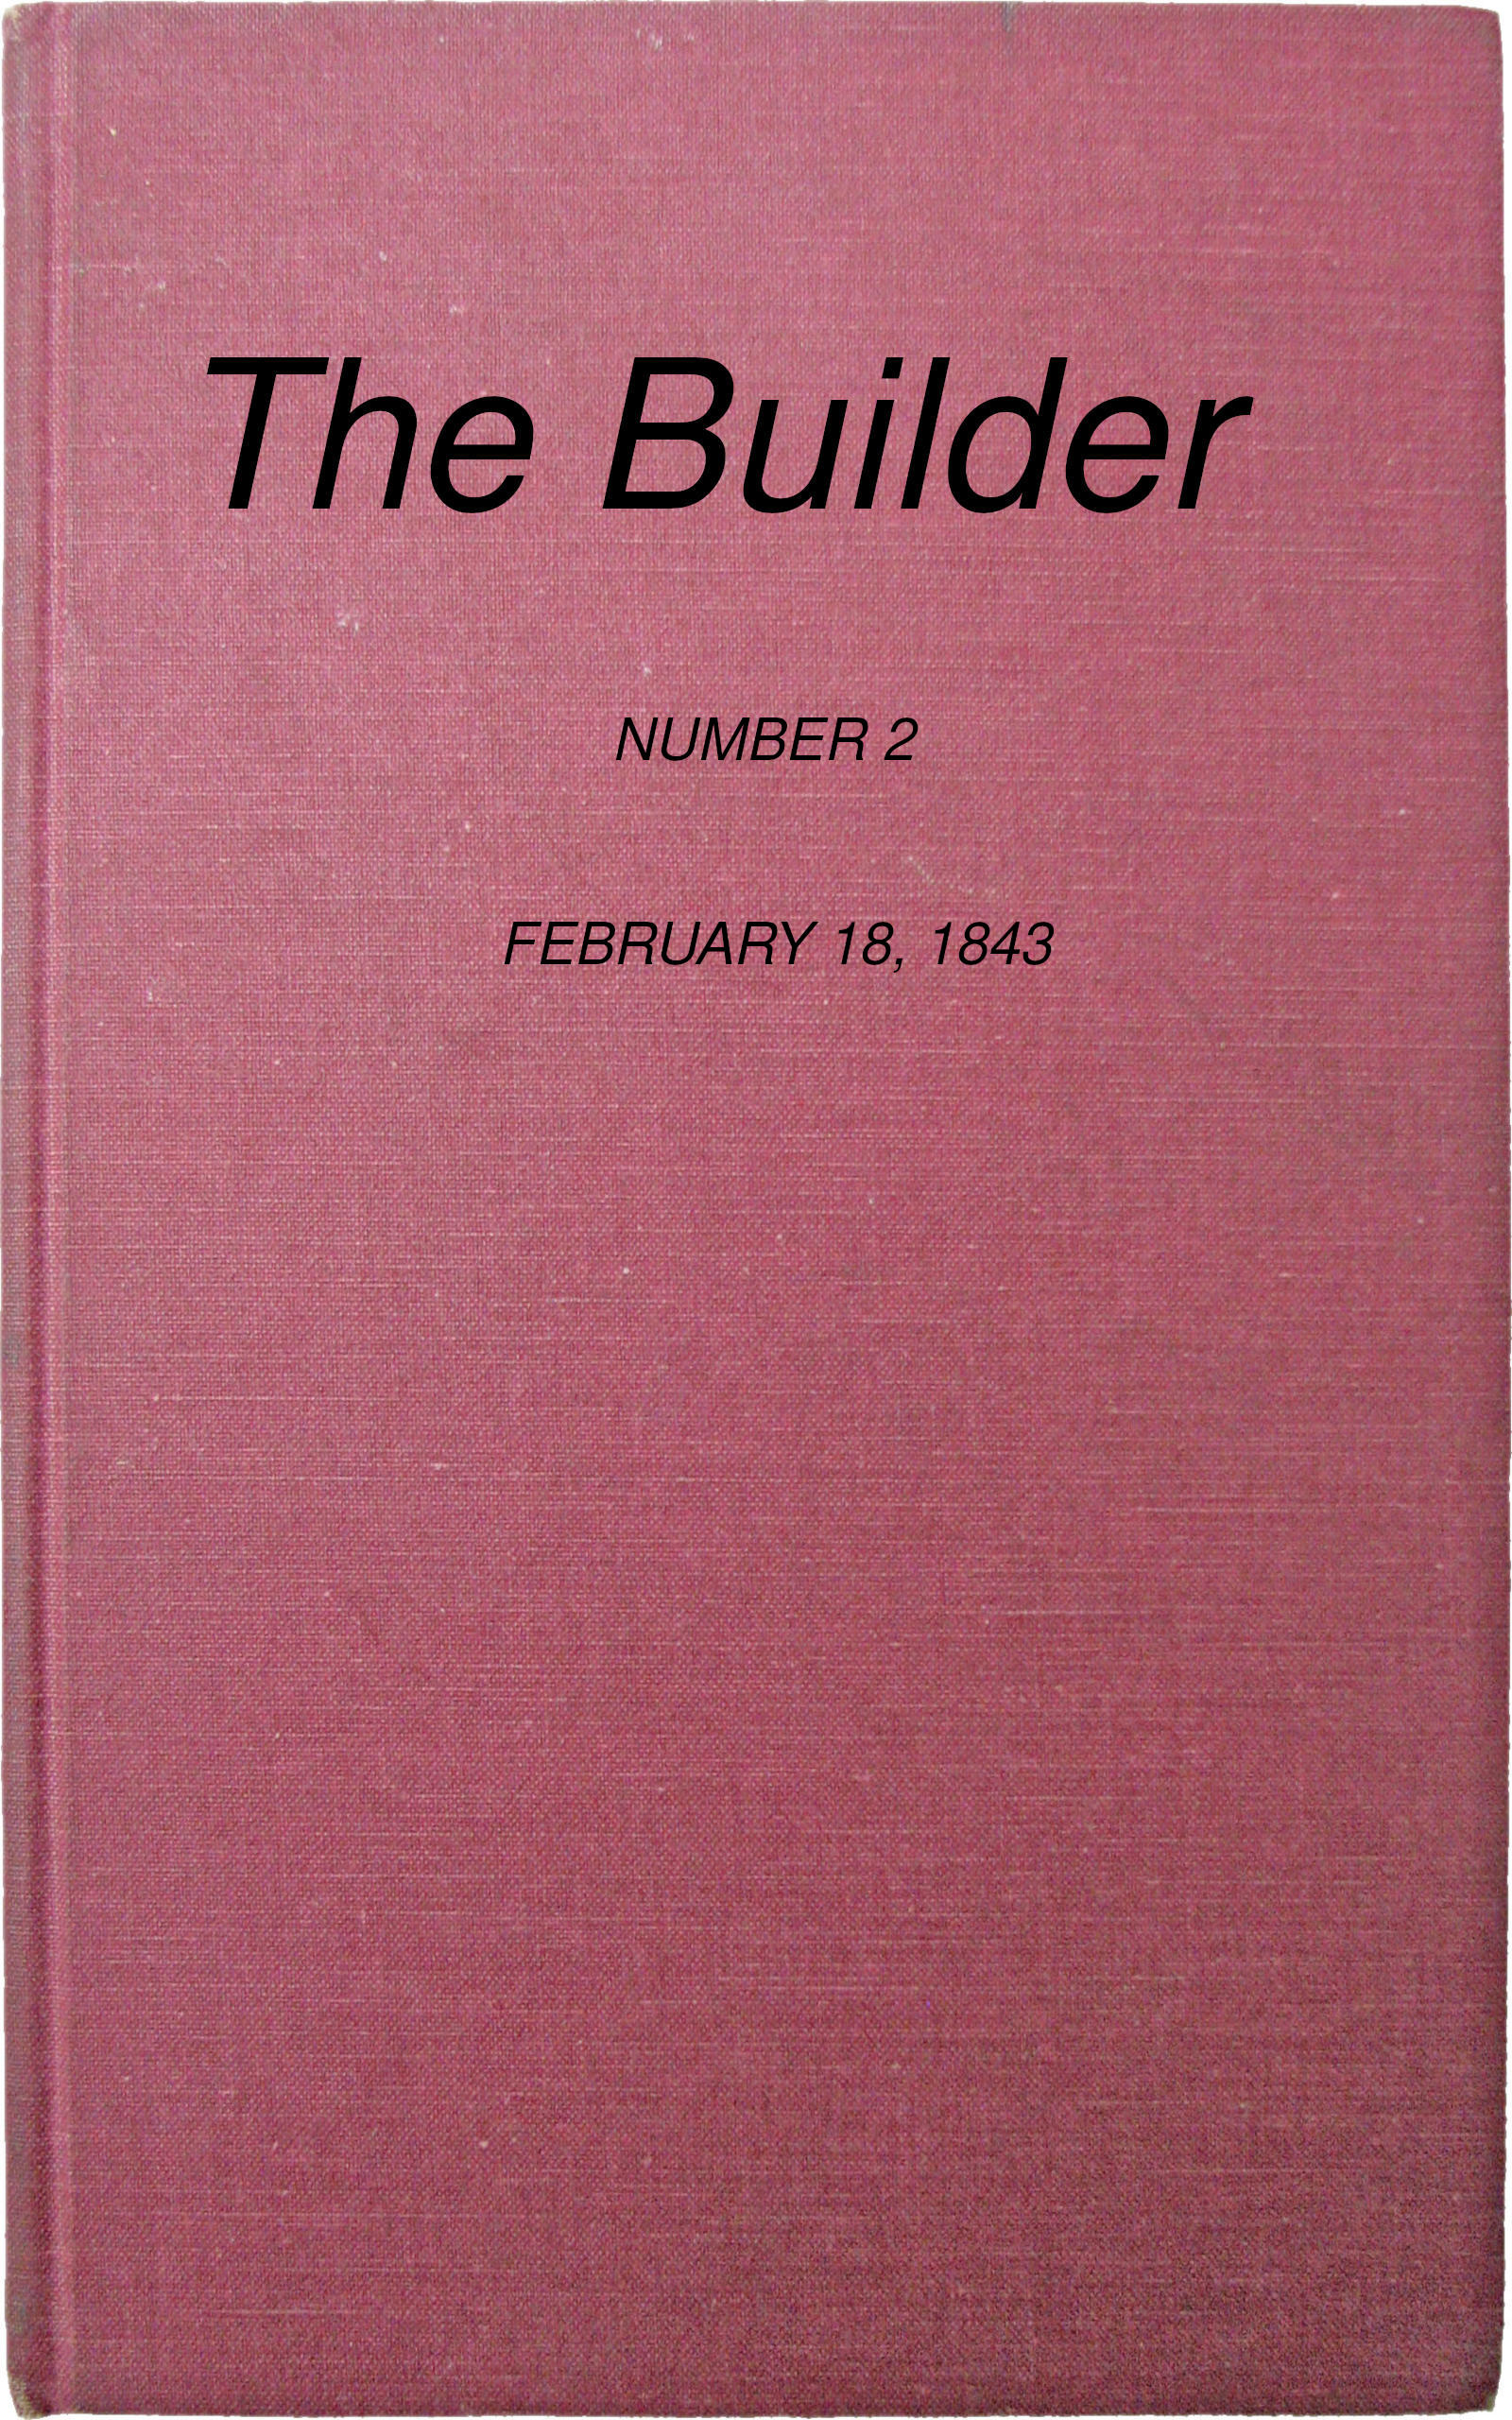 The Builder, No. 2, February 18, 1843